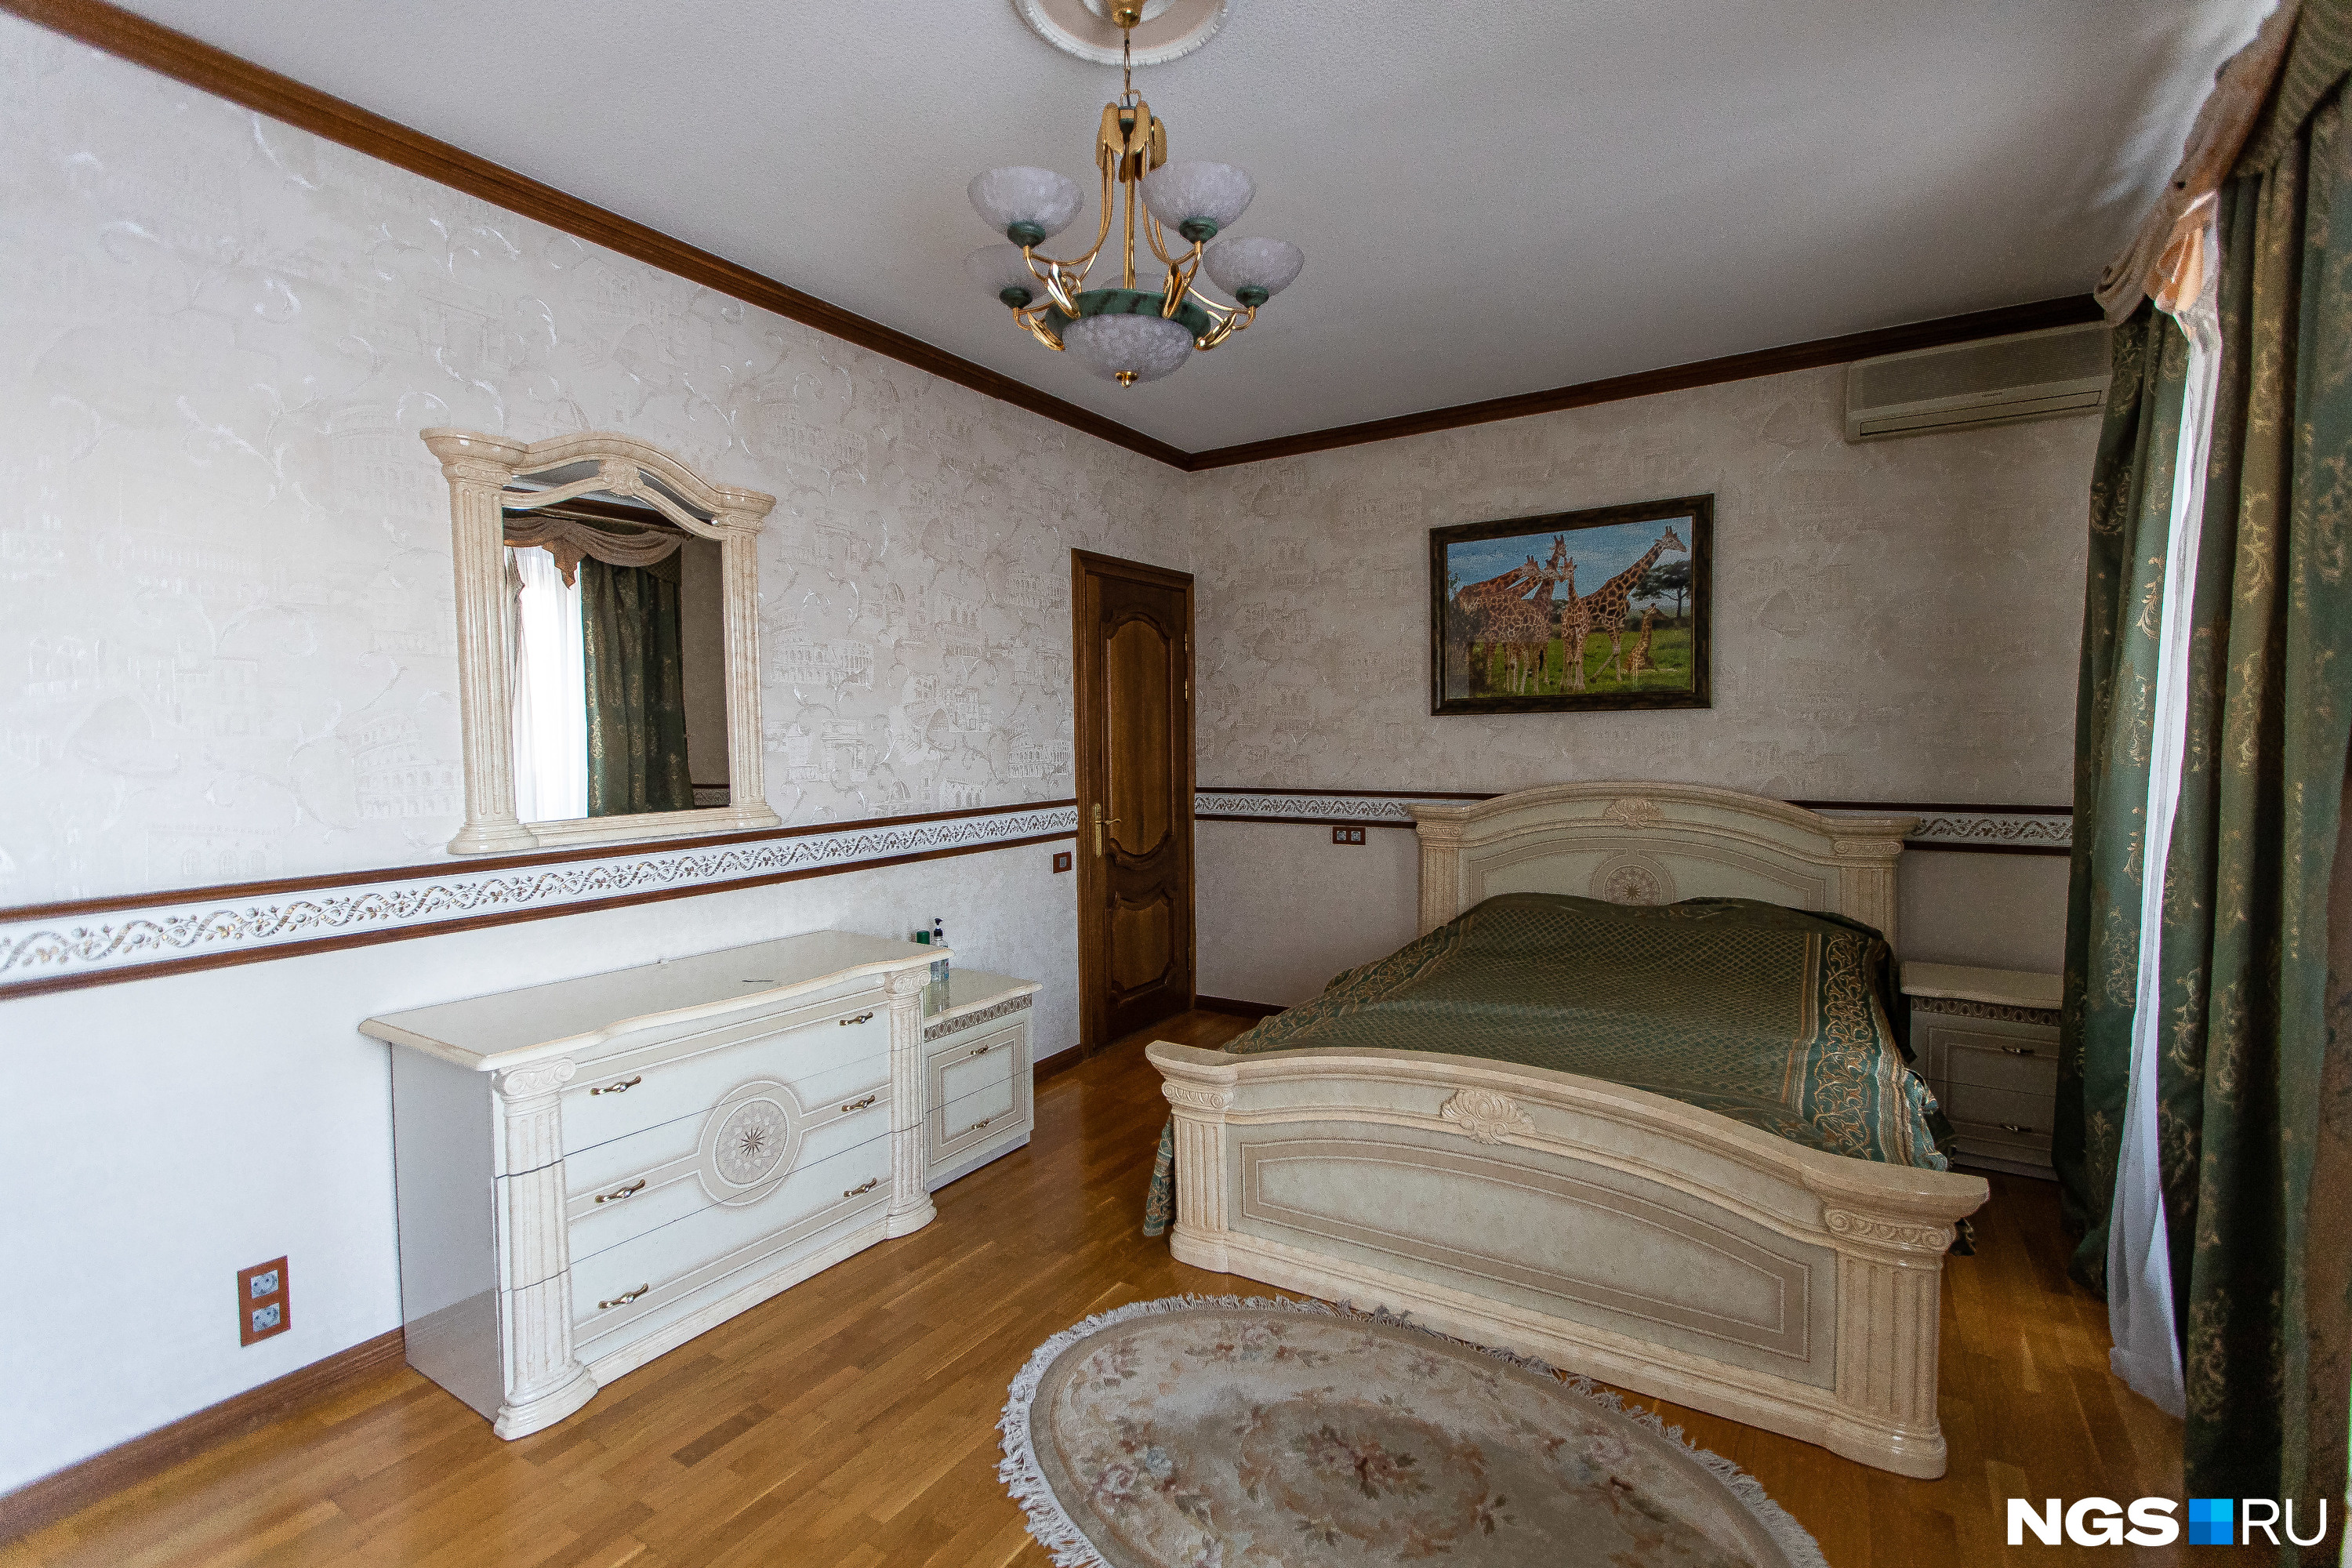 Одна из спален в квартире, которая когда-то принадлежала долларовому миллионеру